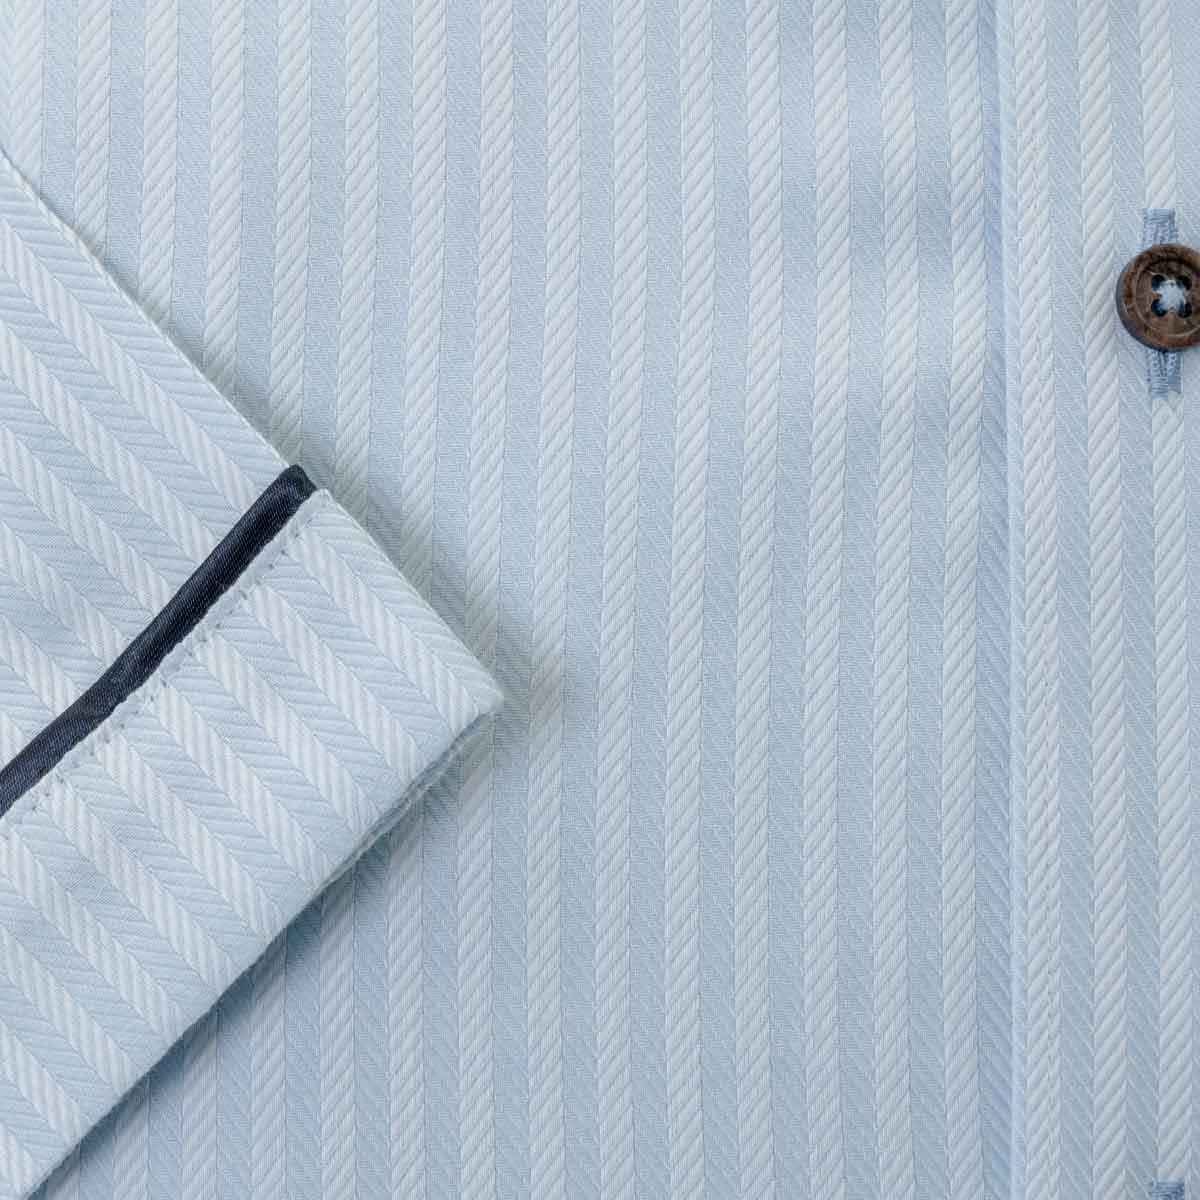 U.P renoma 半袖スリムフィット ボタンダウン ブルー ワイシャツ